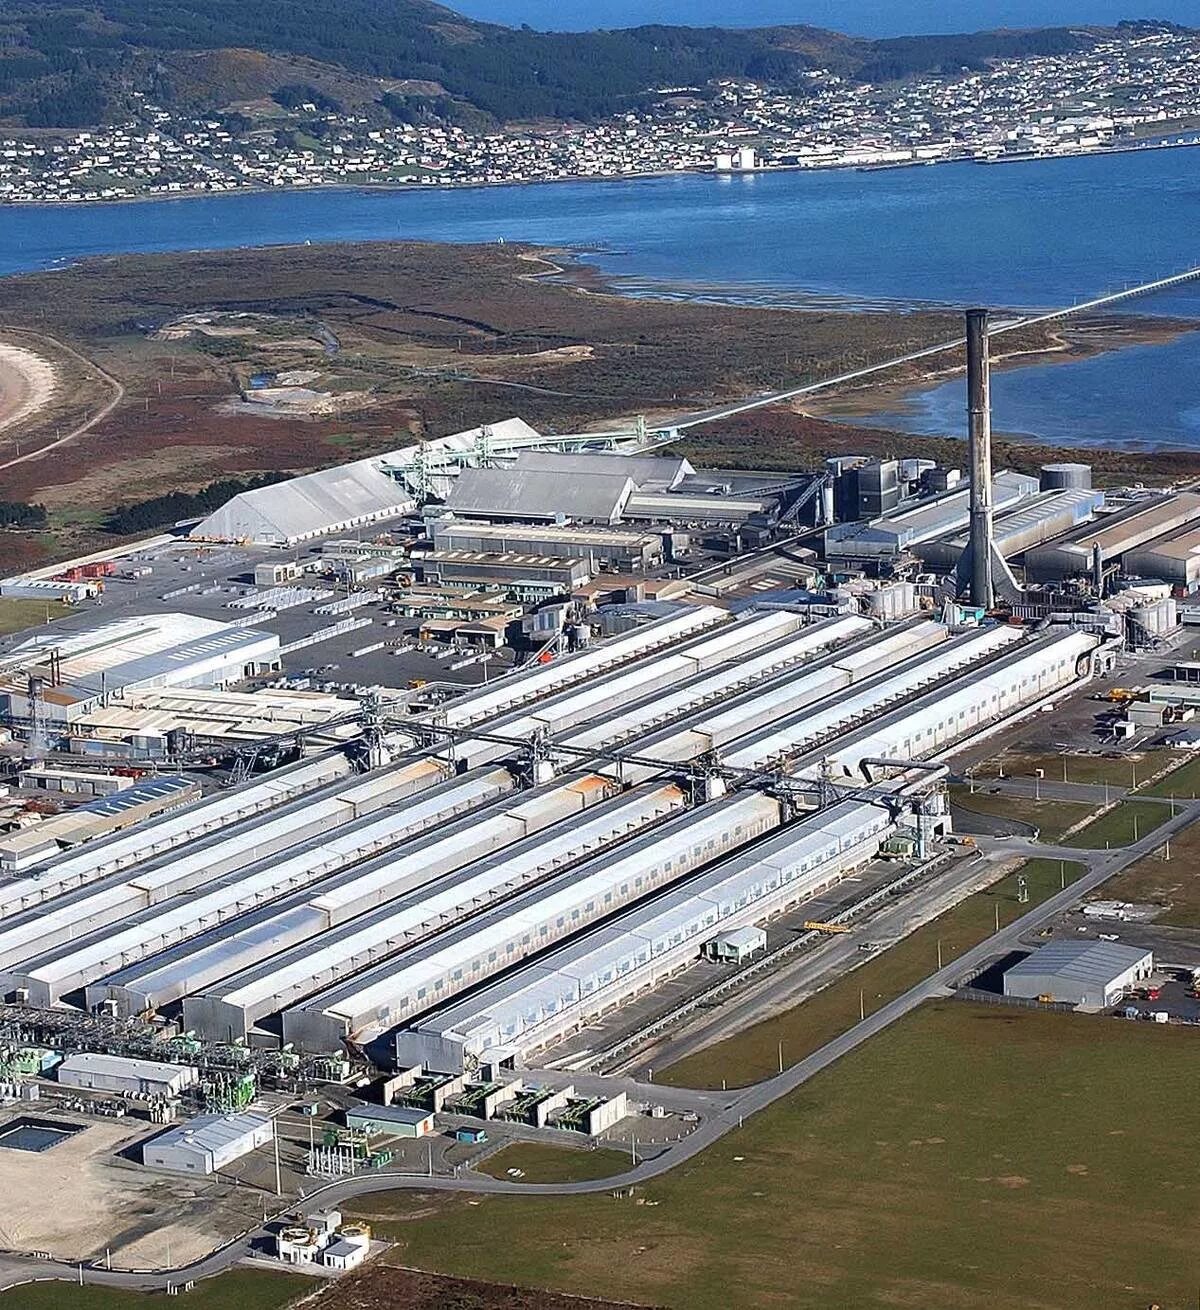 Промышленность новой зеландии. Заводы новой Зеландии. Алюминиевый завод Исландия. Tiwai point Aluminium Smelter алюминиевый завод. В Германии алюминиевого завода Aluminium Rheinfelden.